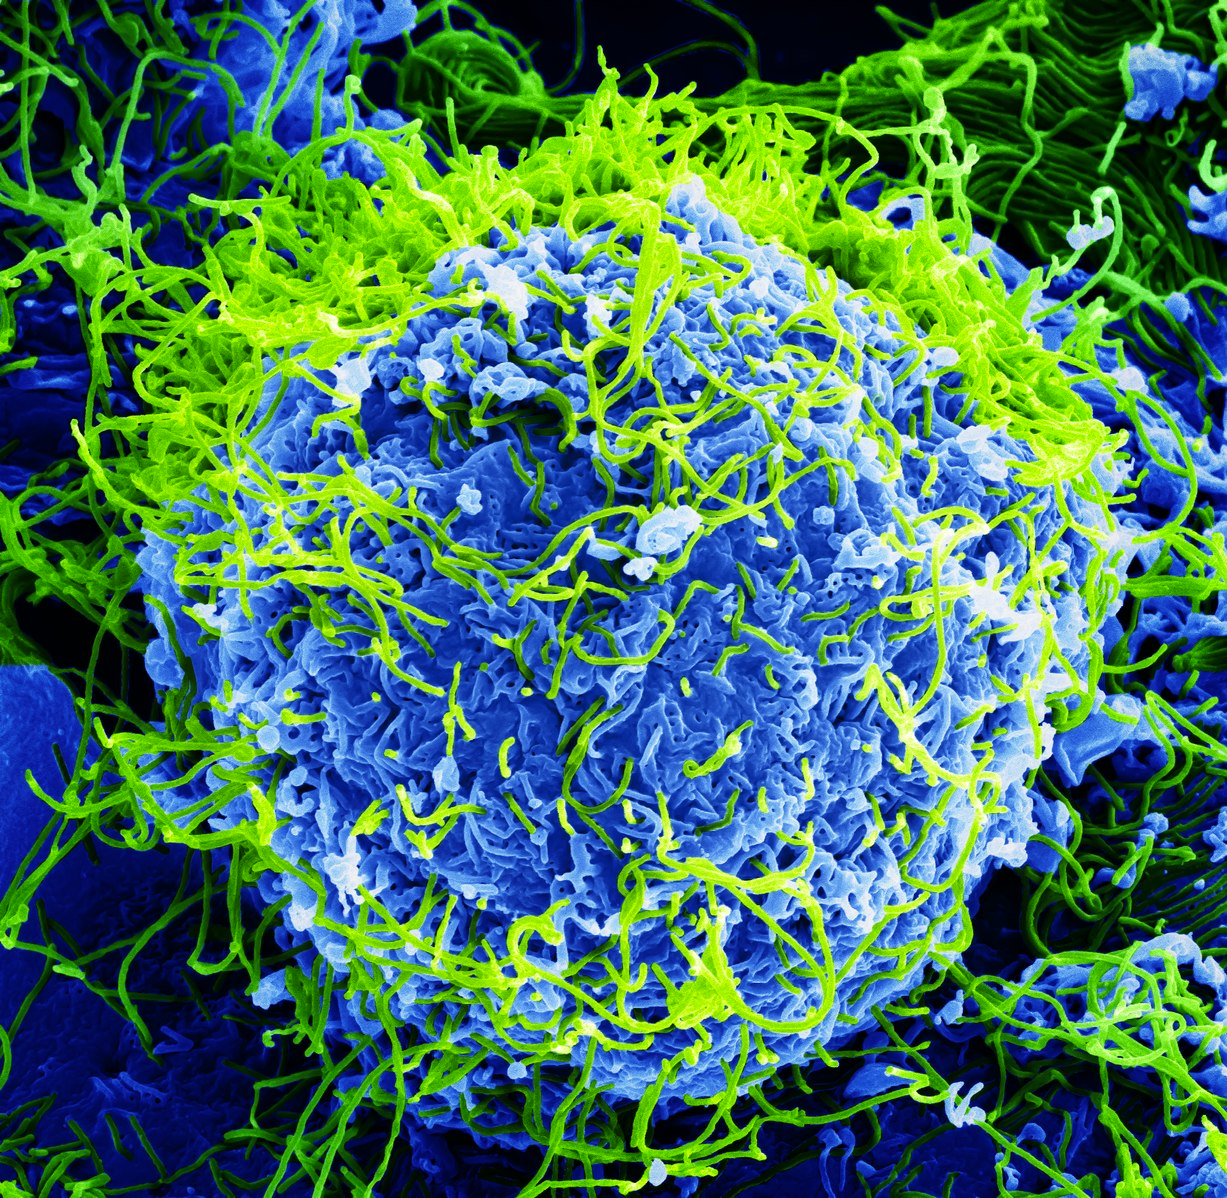 Image of the Ebola virus by BernbaumJG.